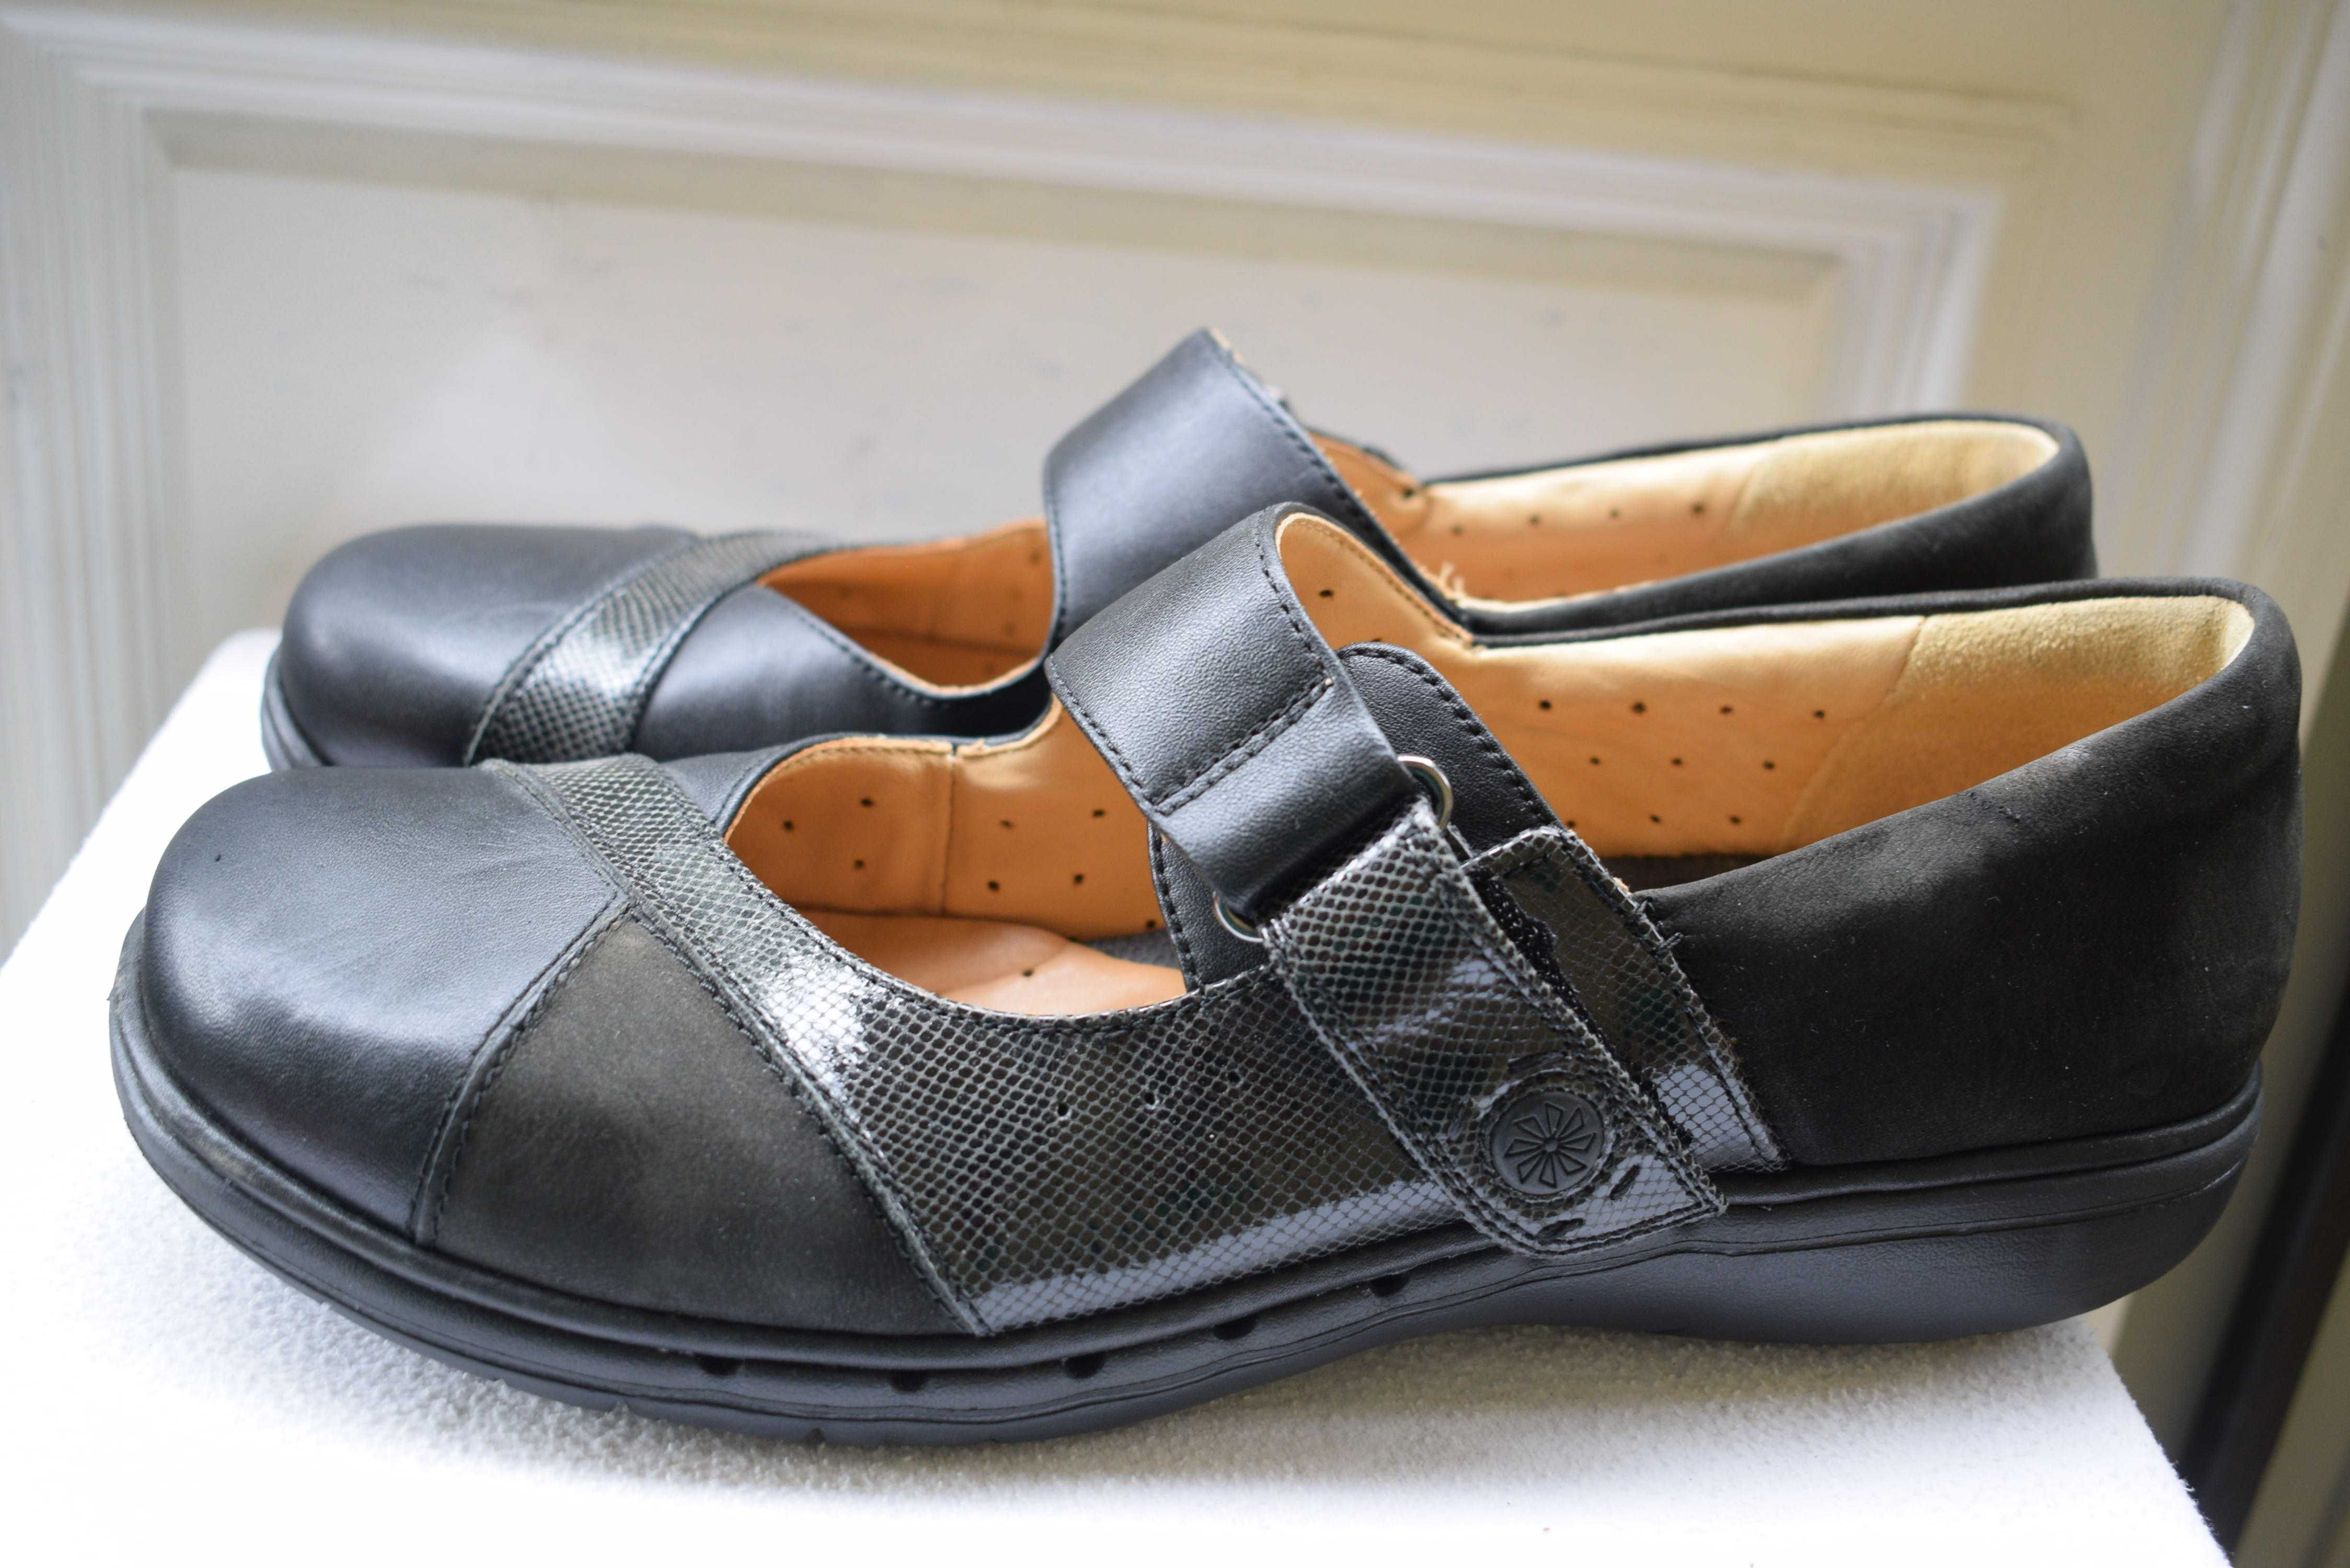 кожаные туфли мокасины слипоны лоферы Clarks р. 42 27,5 см